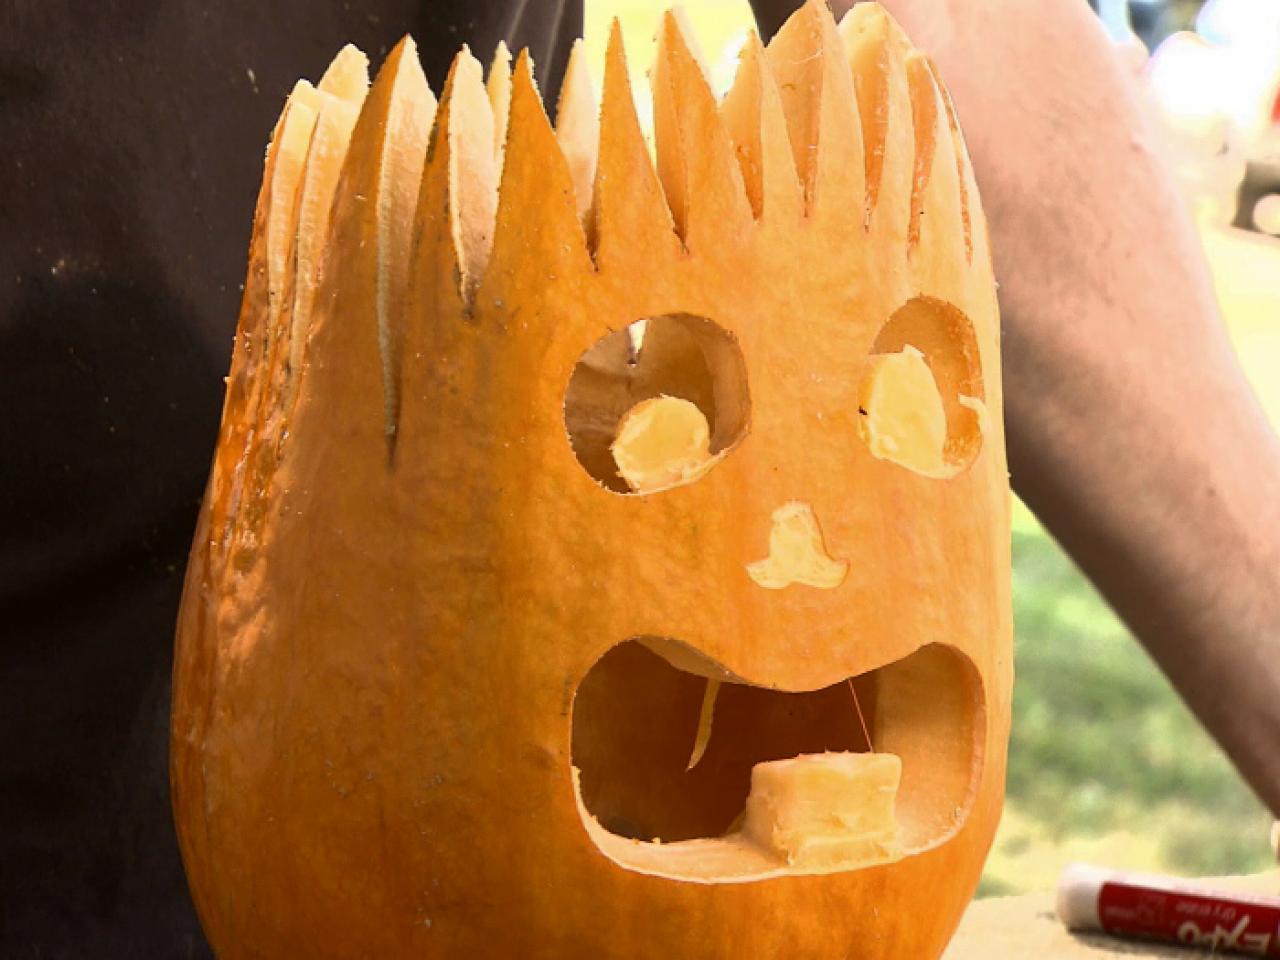 Halloween Pumpkin Carving Electro Jack O' Lantern howtos DIY